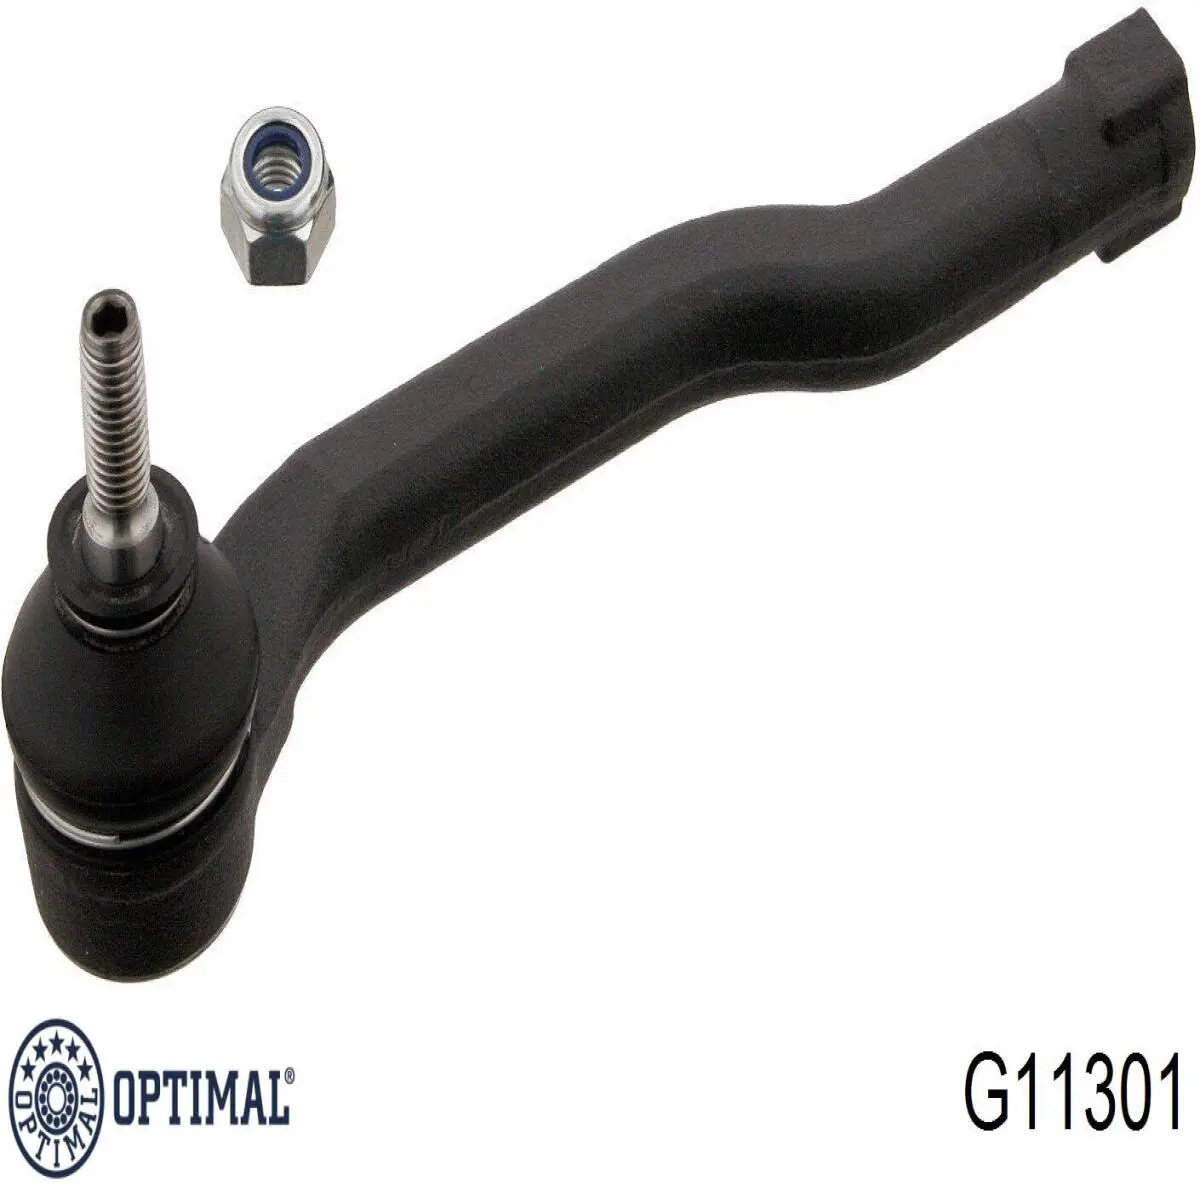 G11301 Optimal rótula barra de acoplamiento exterior